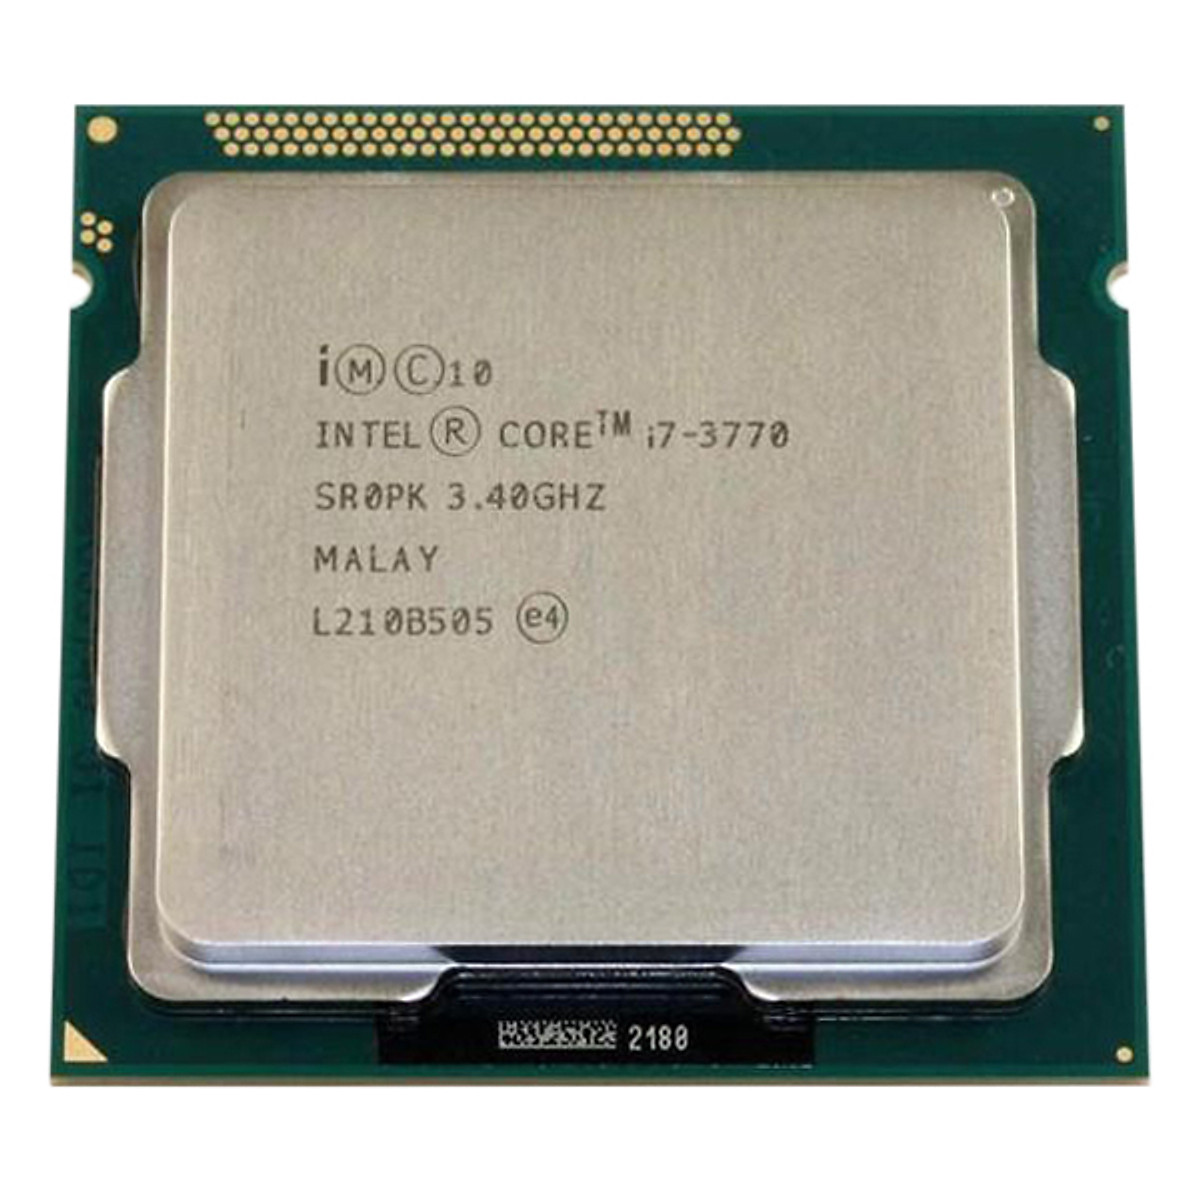 Bộ Vi Xử Lý CPU Intel Core I7-3770 (3.40GHz, 8M, 4 Cores 8 Threads, Socket LGA1155, Thế hệ 3) Tray chưa có Fan - Hàng Chính Hãng